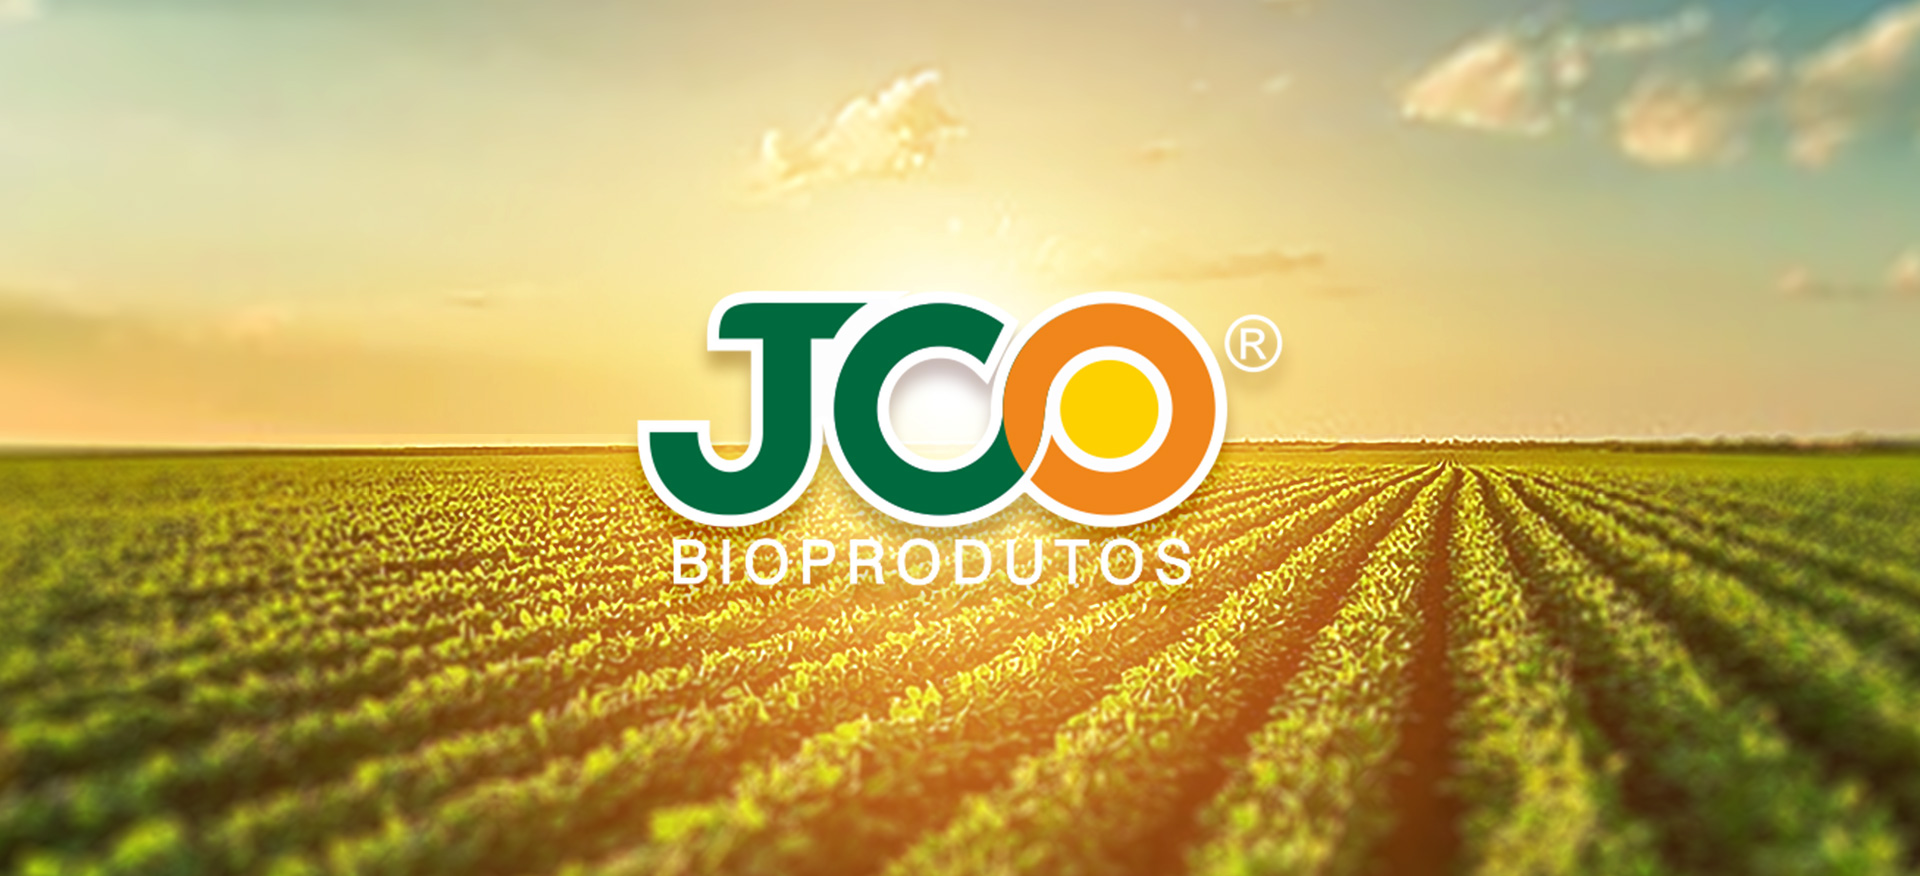 JCO levará seus produtos biológicos pela primeira vez ao CBA